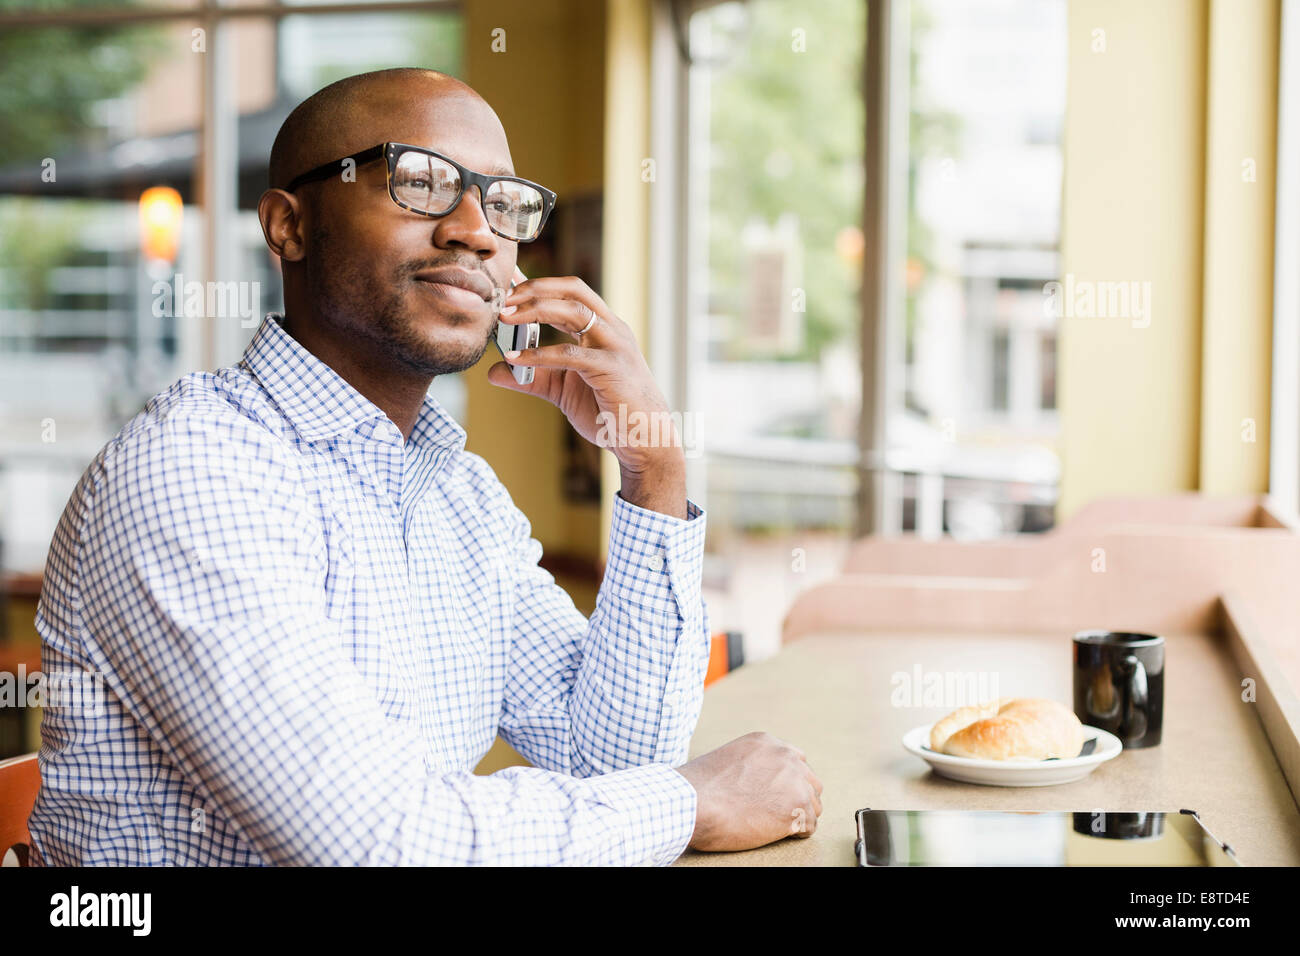 Schwarzer Mann reden über Handy in Coffee-shop Stockfoto